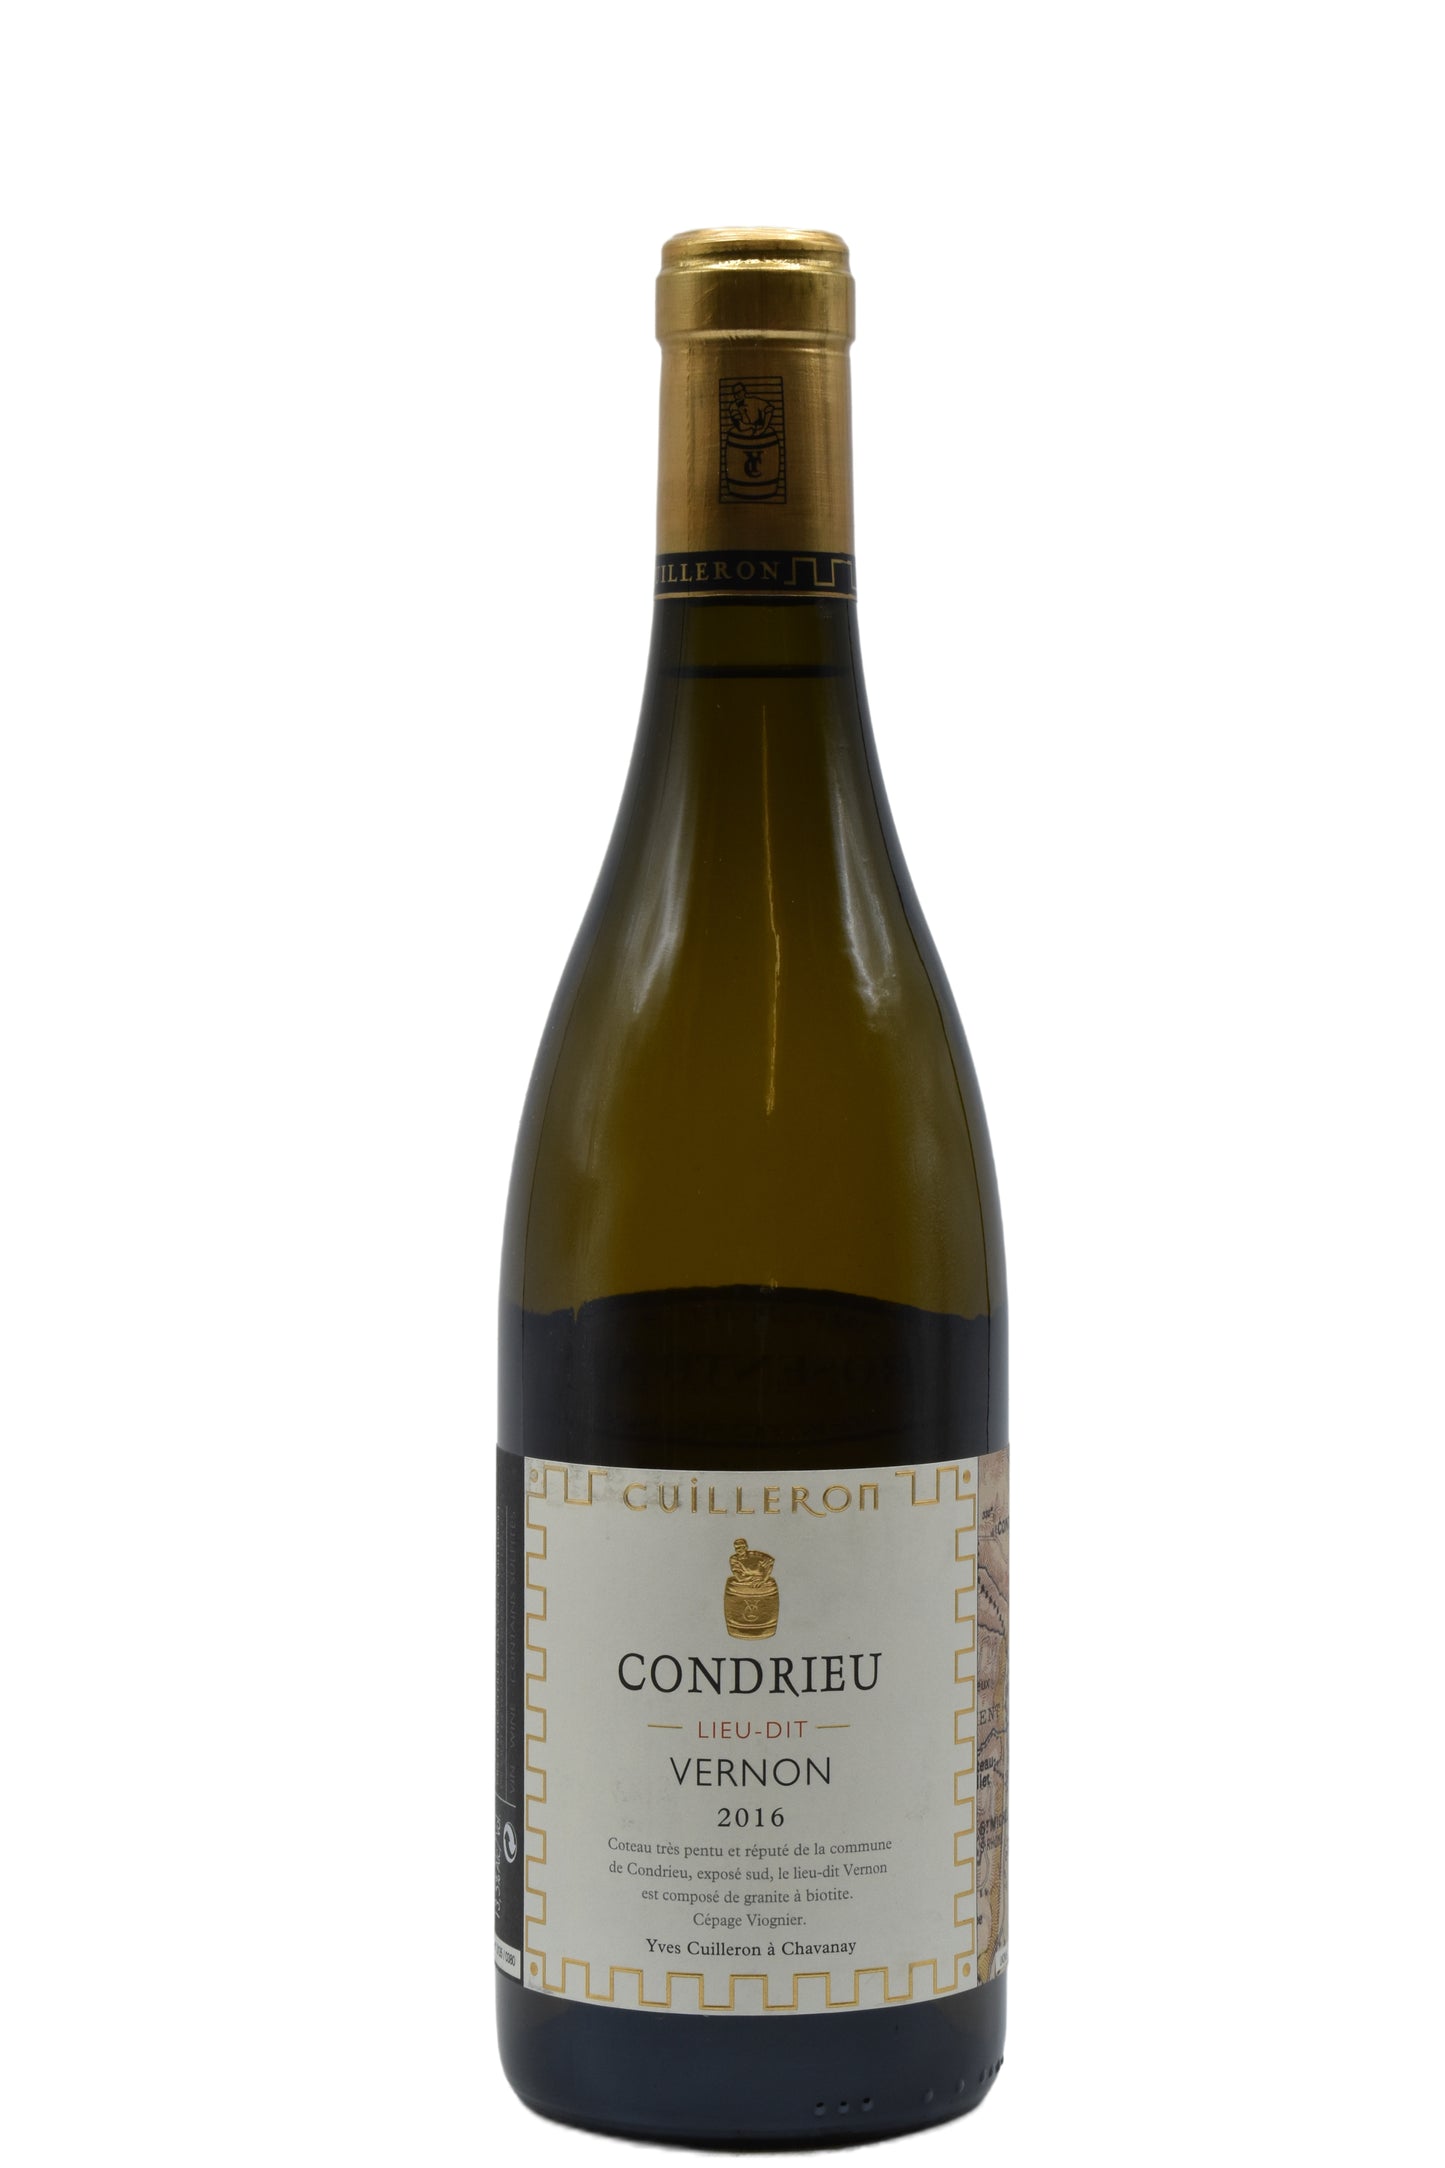 2016 Yves Cuilleron, "Vernon" Condrieu 750ml - Walker Wine Co.